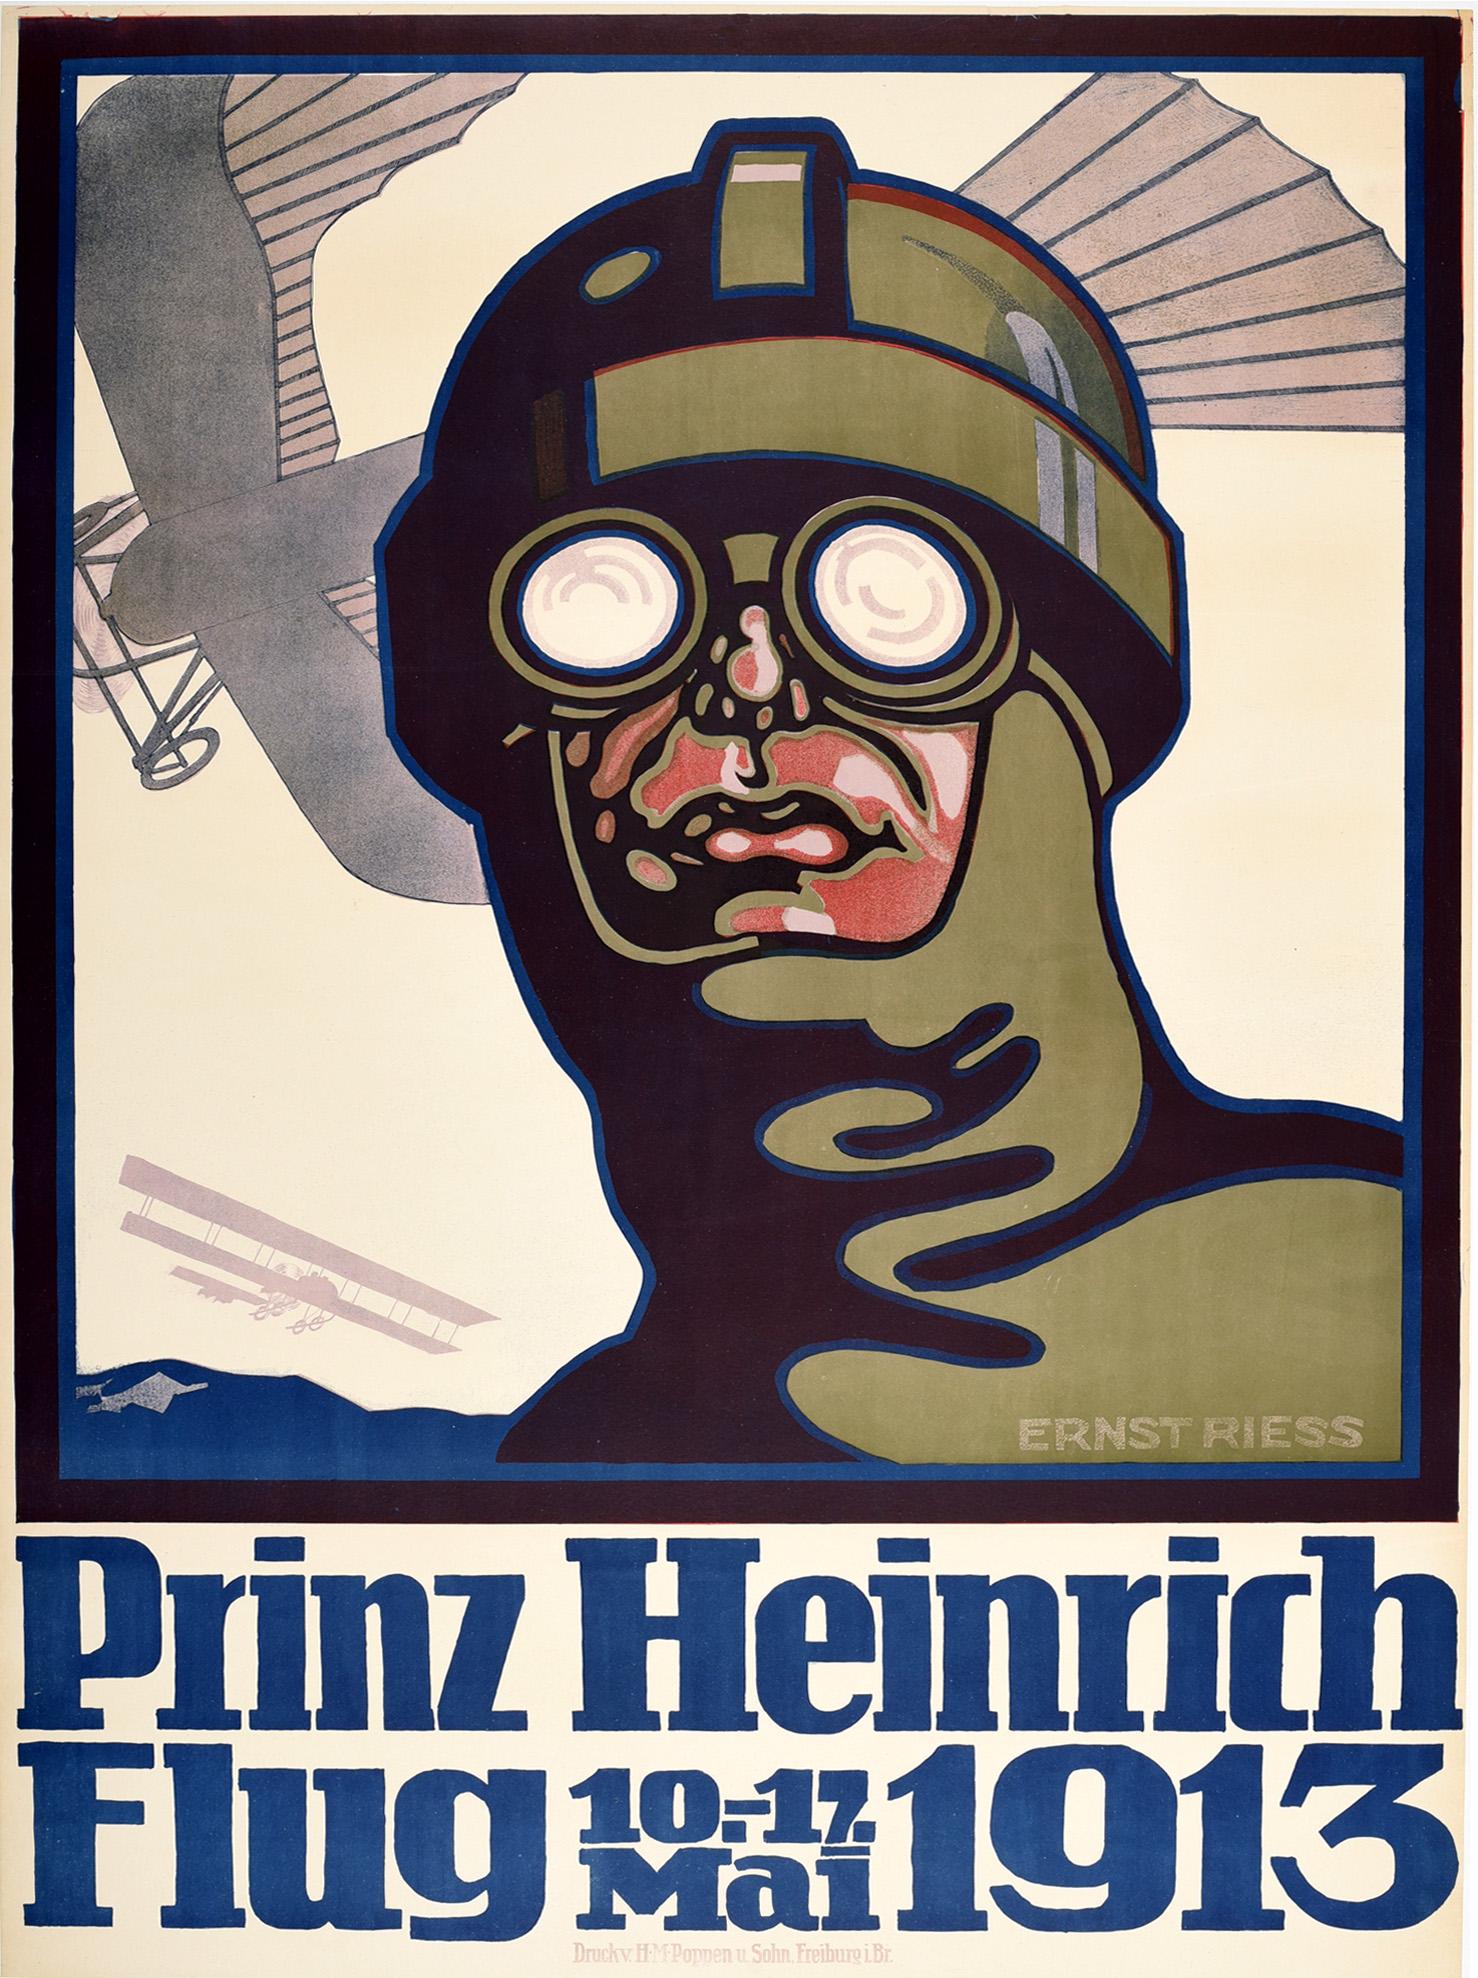 Unknown Print – Original Antikes Originalplakat, Prinz Heinrich Flug 1913 Flugrennen, frühe Luftfahrt, Kunst